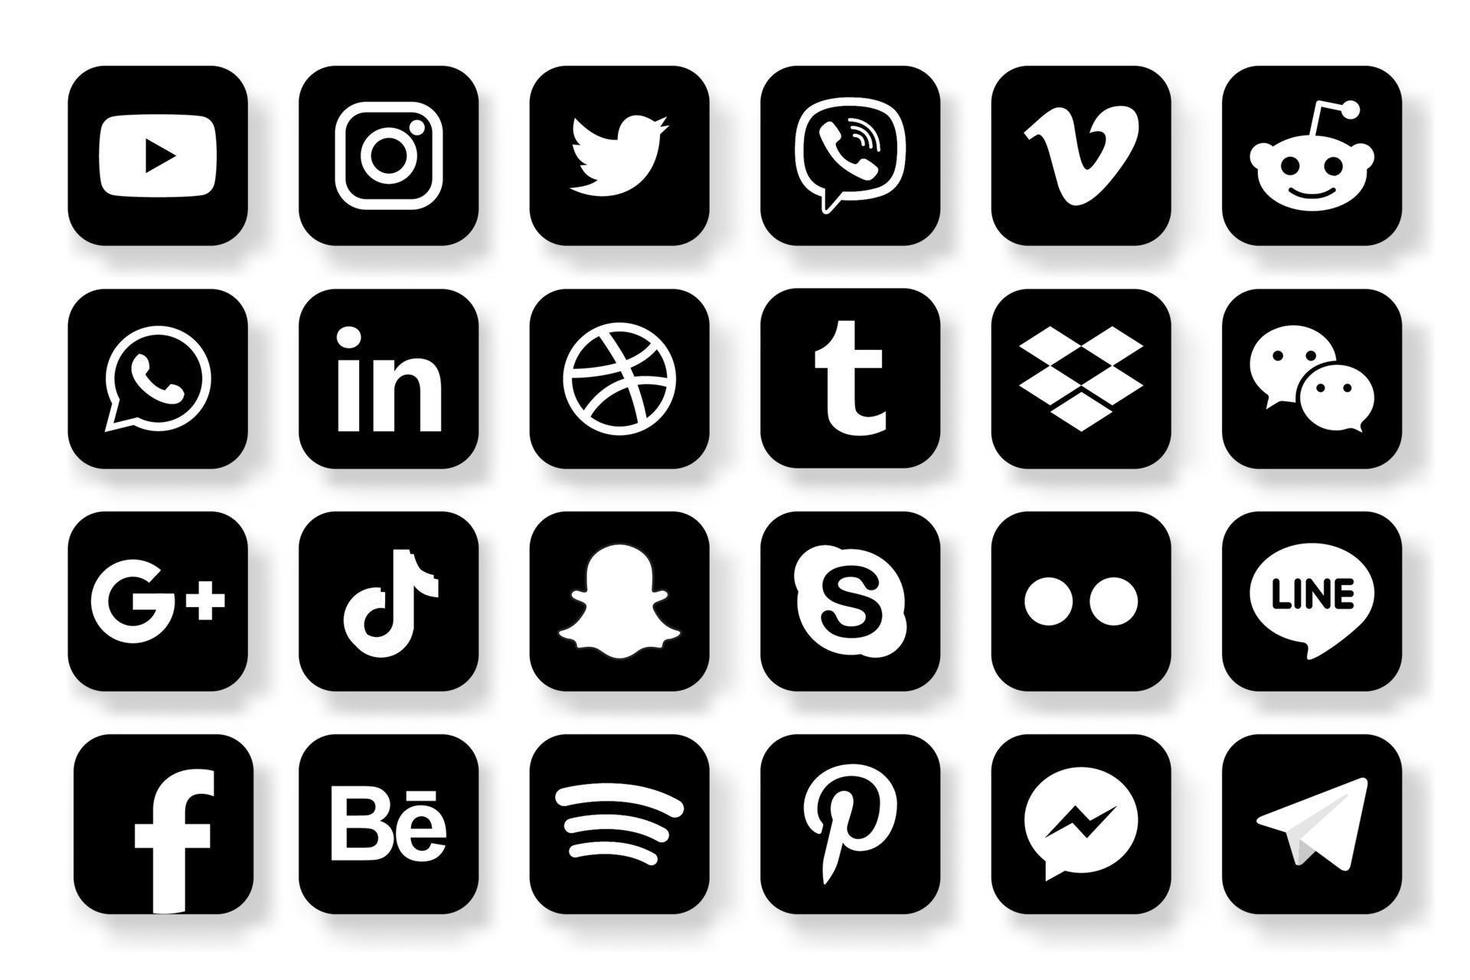 définir des icônes de médias sociaux populaires. facebook, instagram, twitter, youtube, pinterest, behance, google plus, linkedin, whatsapp, snapchat, tic tac, tumblr, spotify, dropbox et bien d'autres vecteur